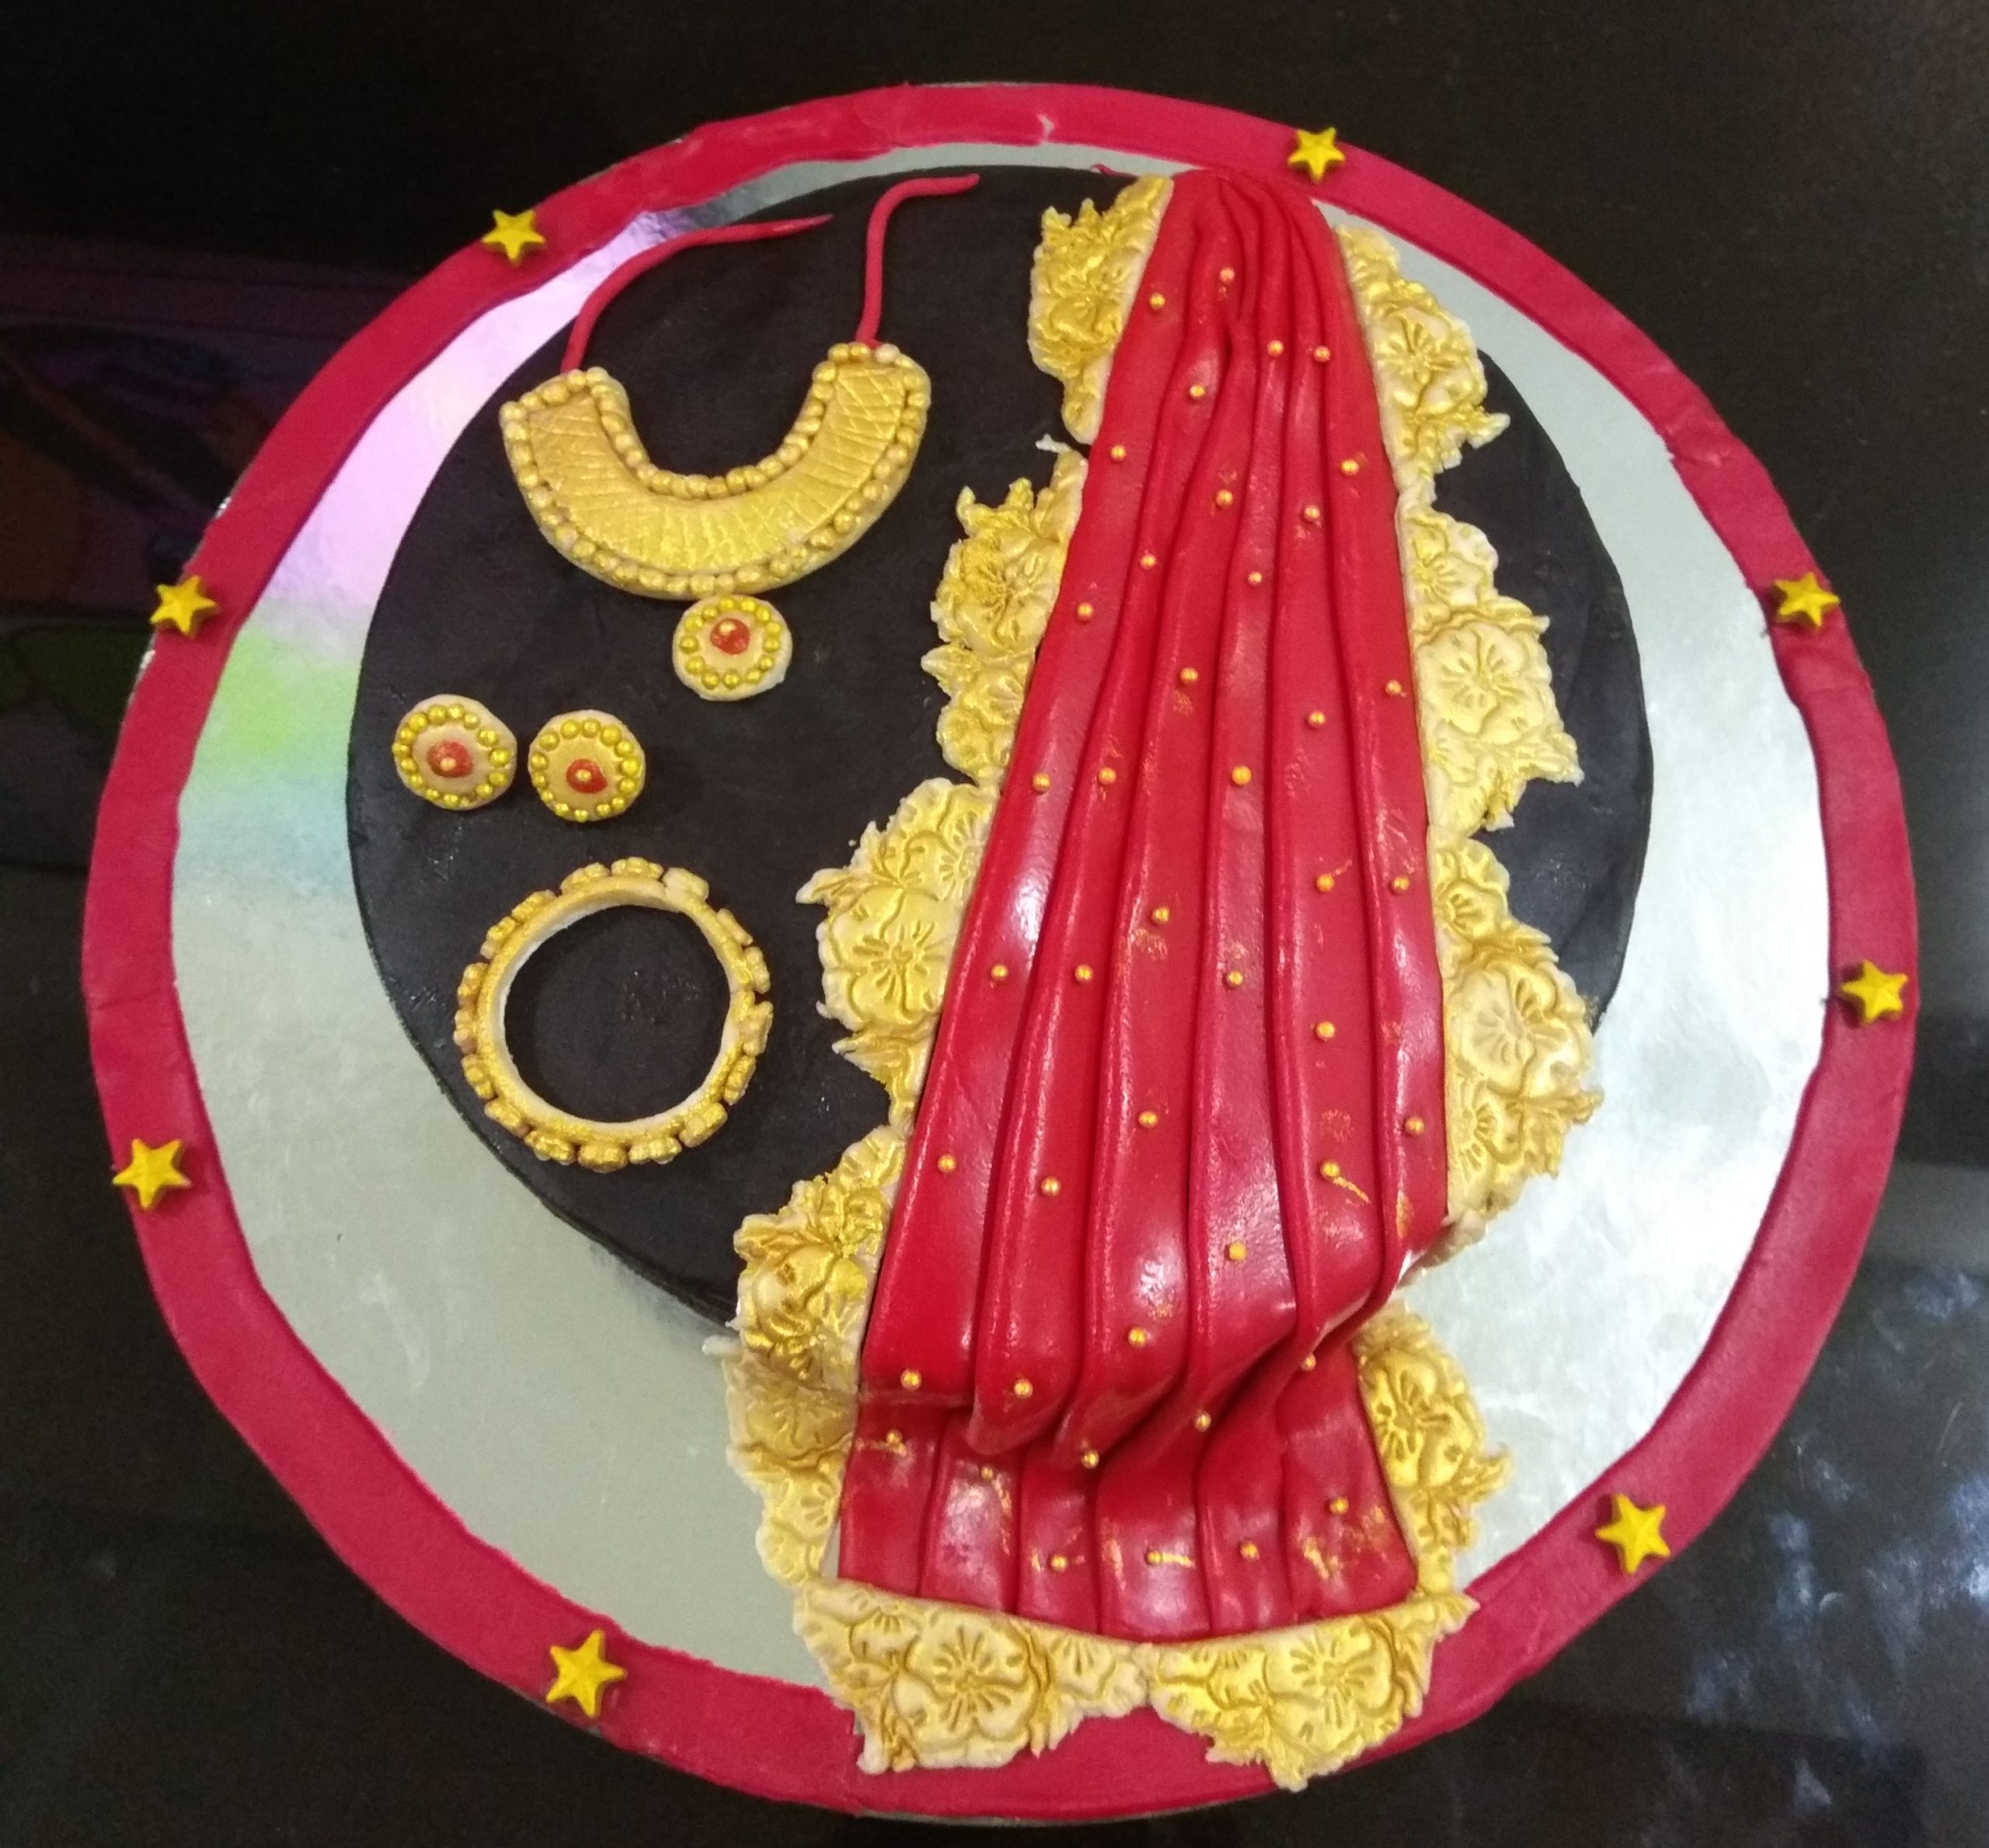 Saree Cake Designs, Images, Price Near Me